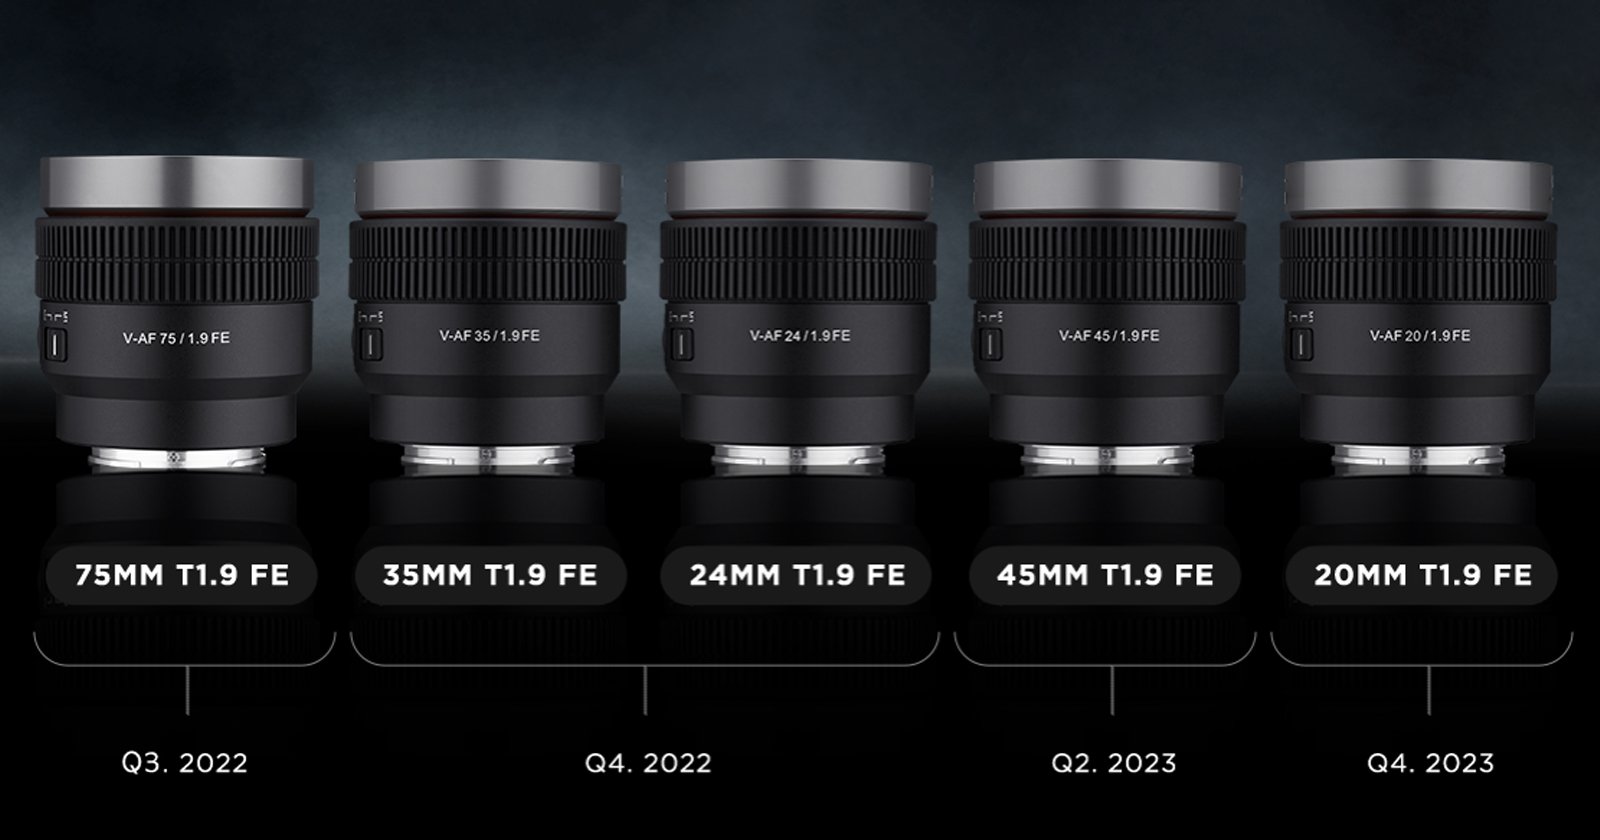 Samyang Reveals the ‘World’s First’ V-AF Cine Autofocus E-Mount Lenses